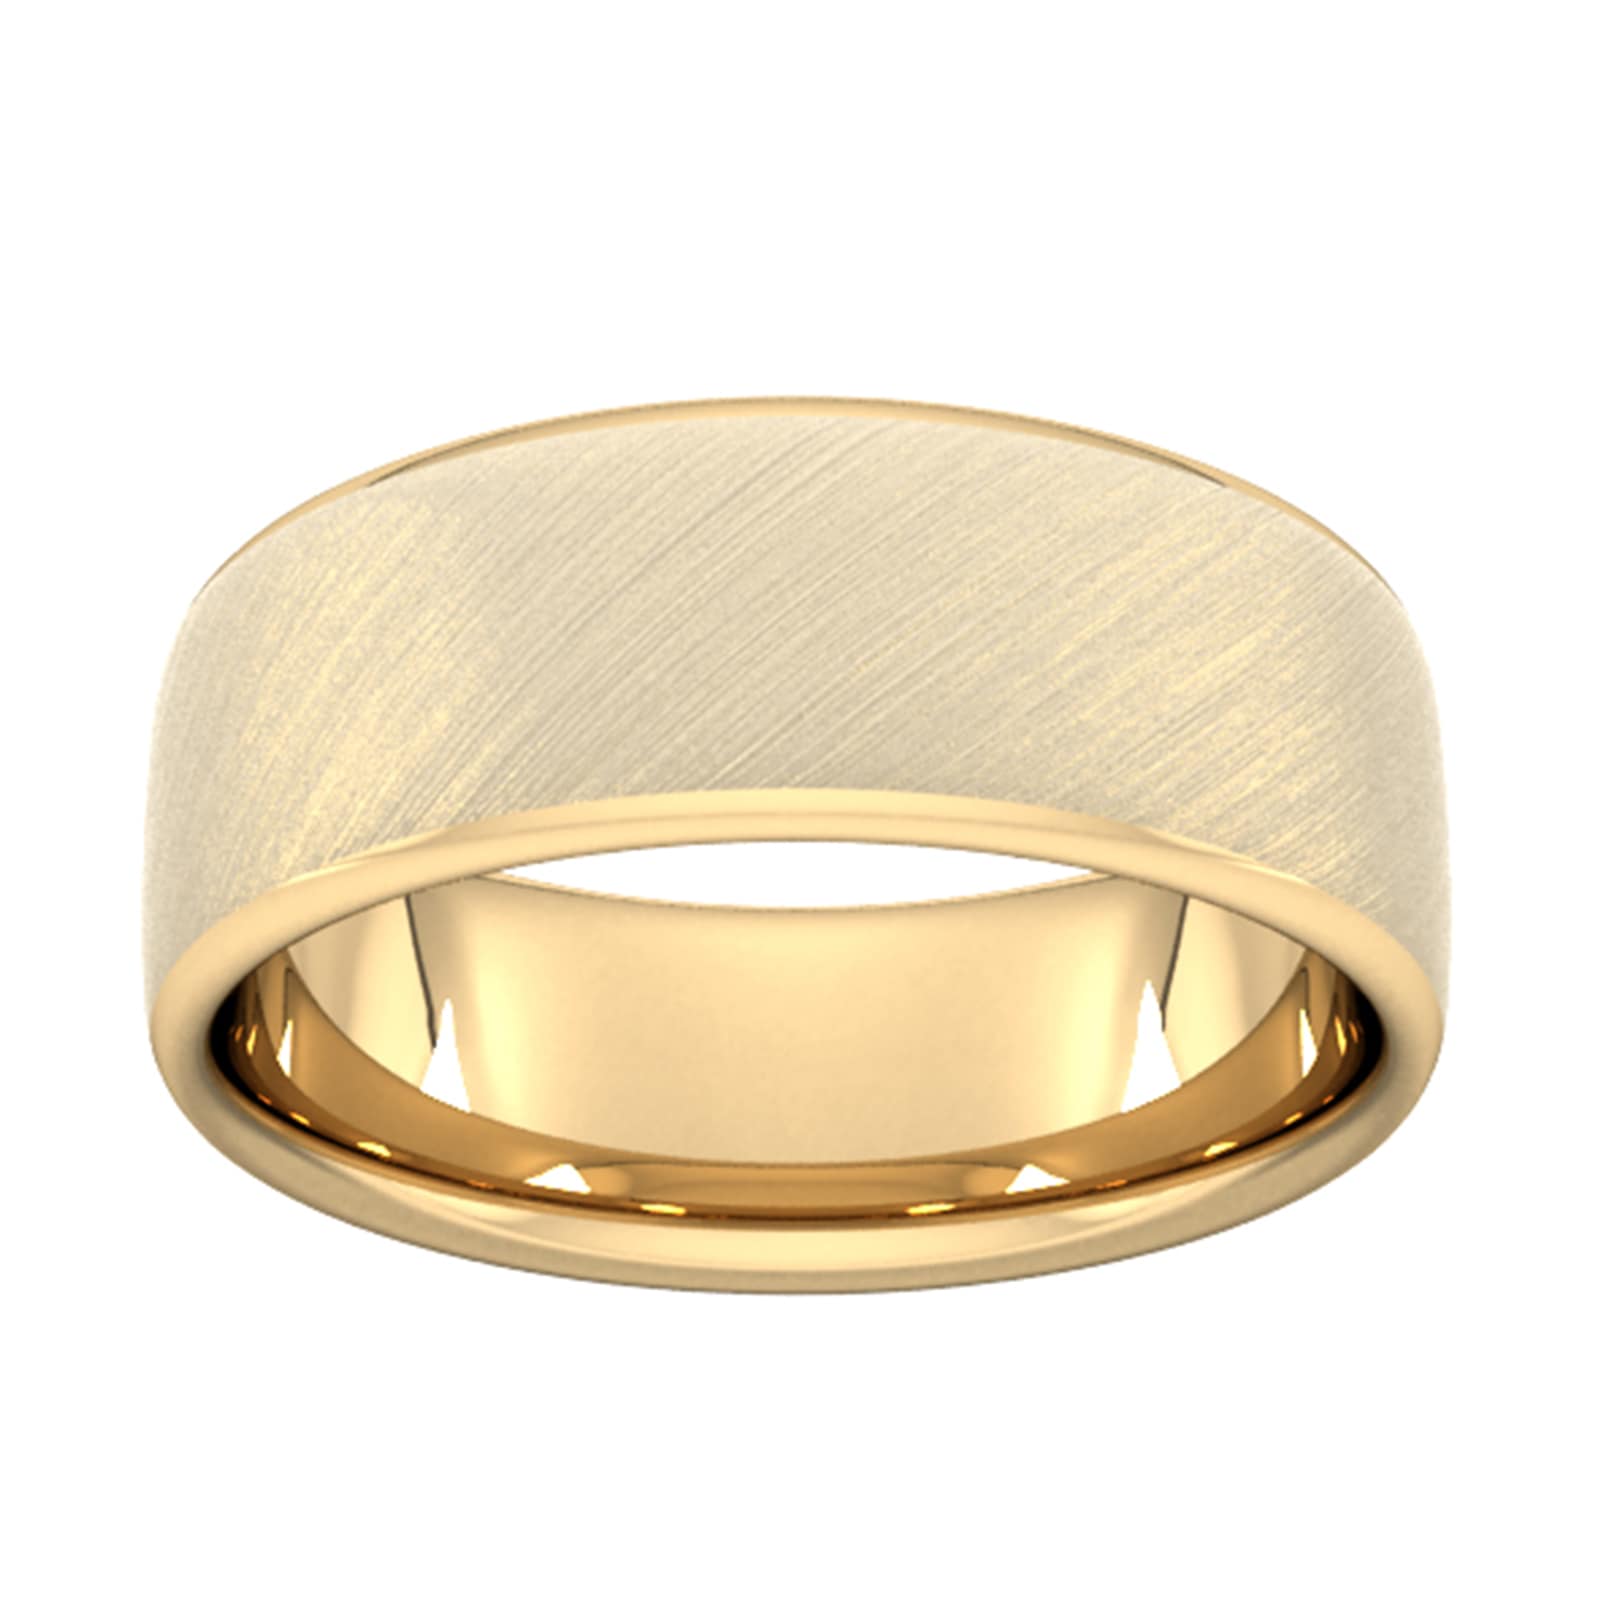 8mm Slight Court Heavy Diagonal Matt Finish Wedding Ring In 9 Carat Yellow Gold - Ring Size X